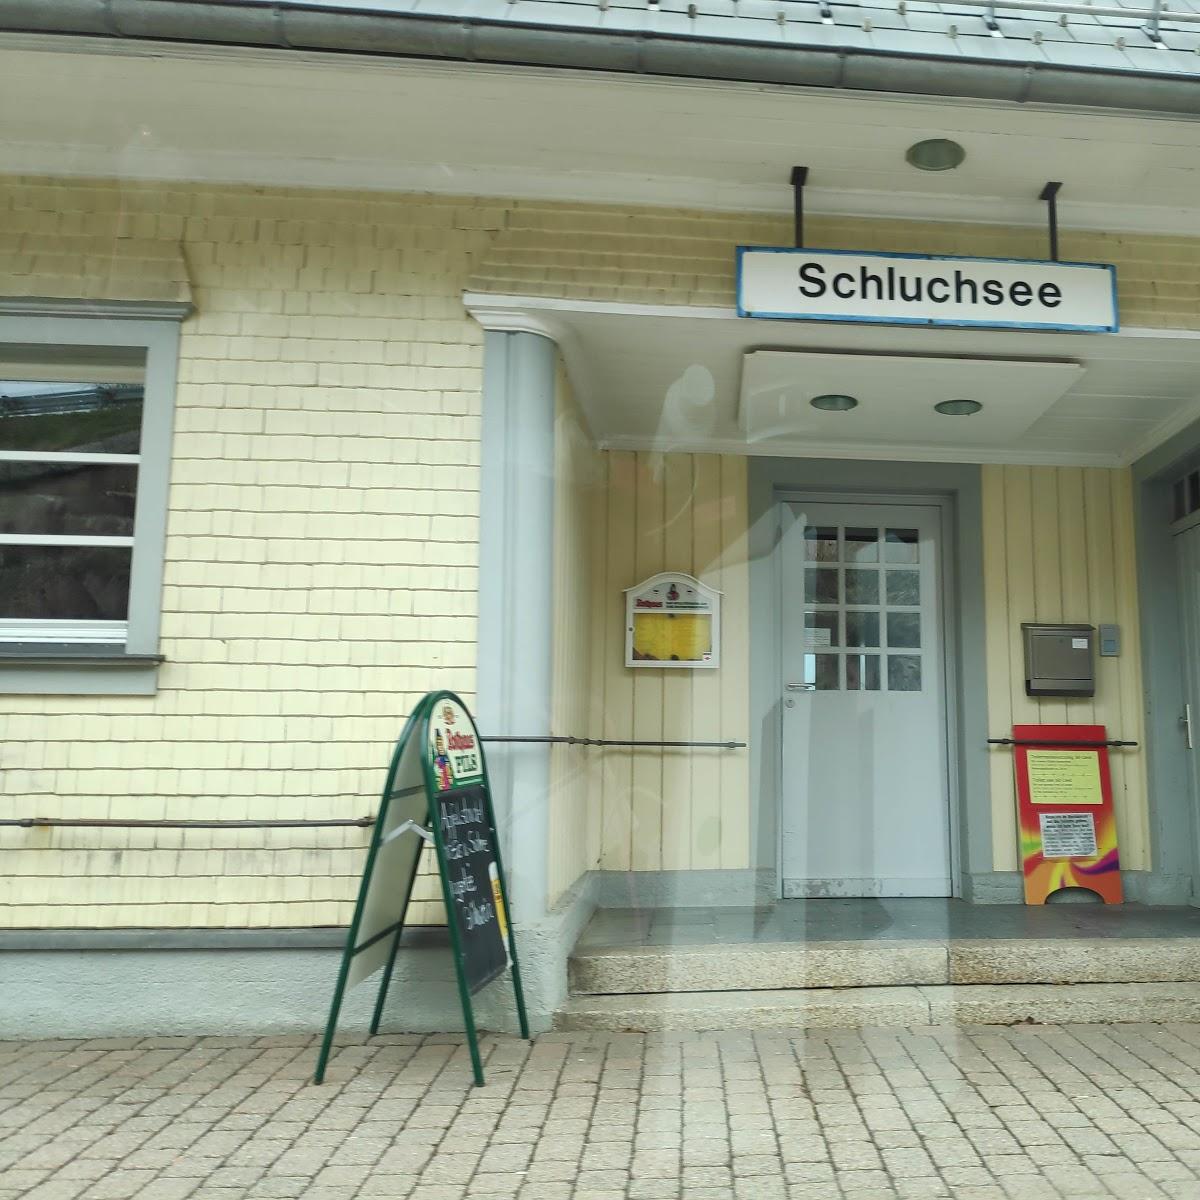 Restaurant "Seestation Cafe" in Schluchsee